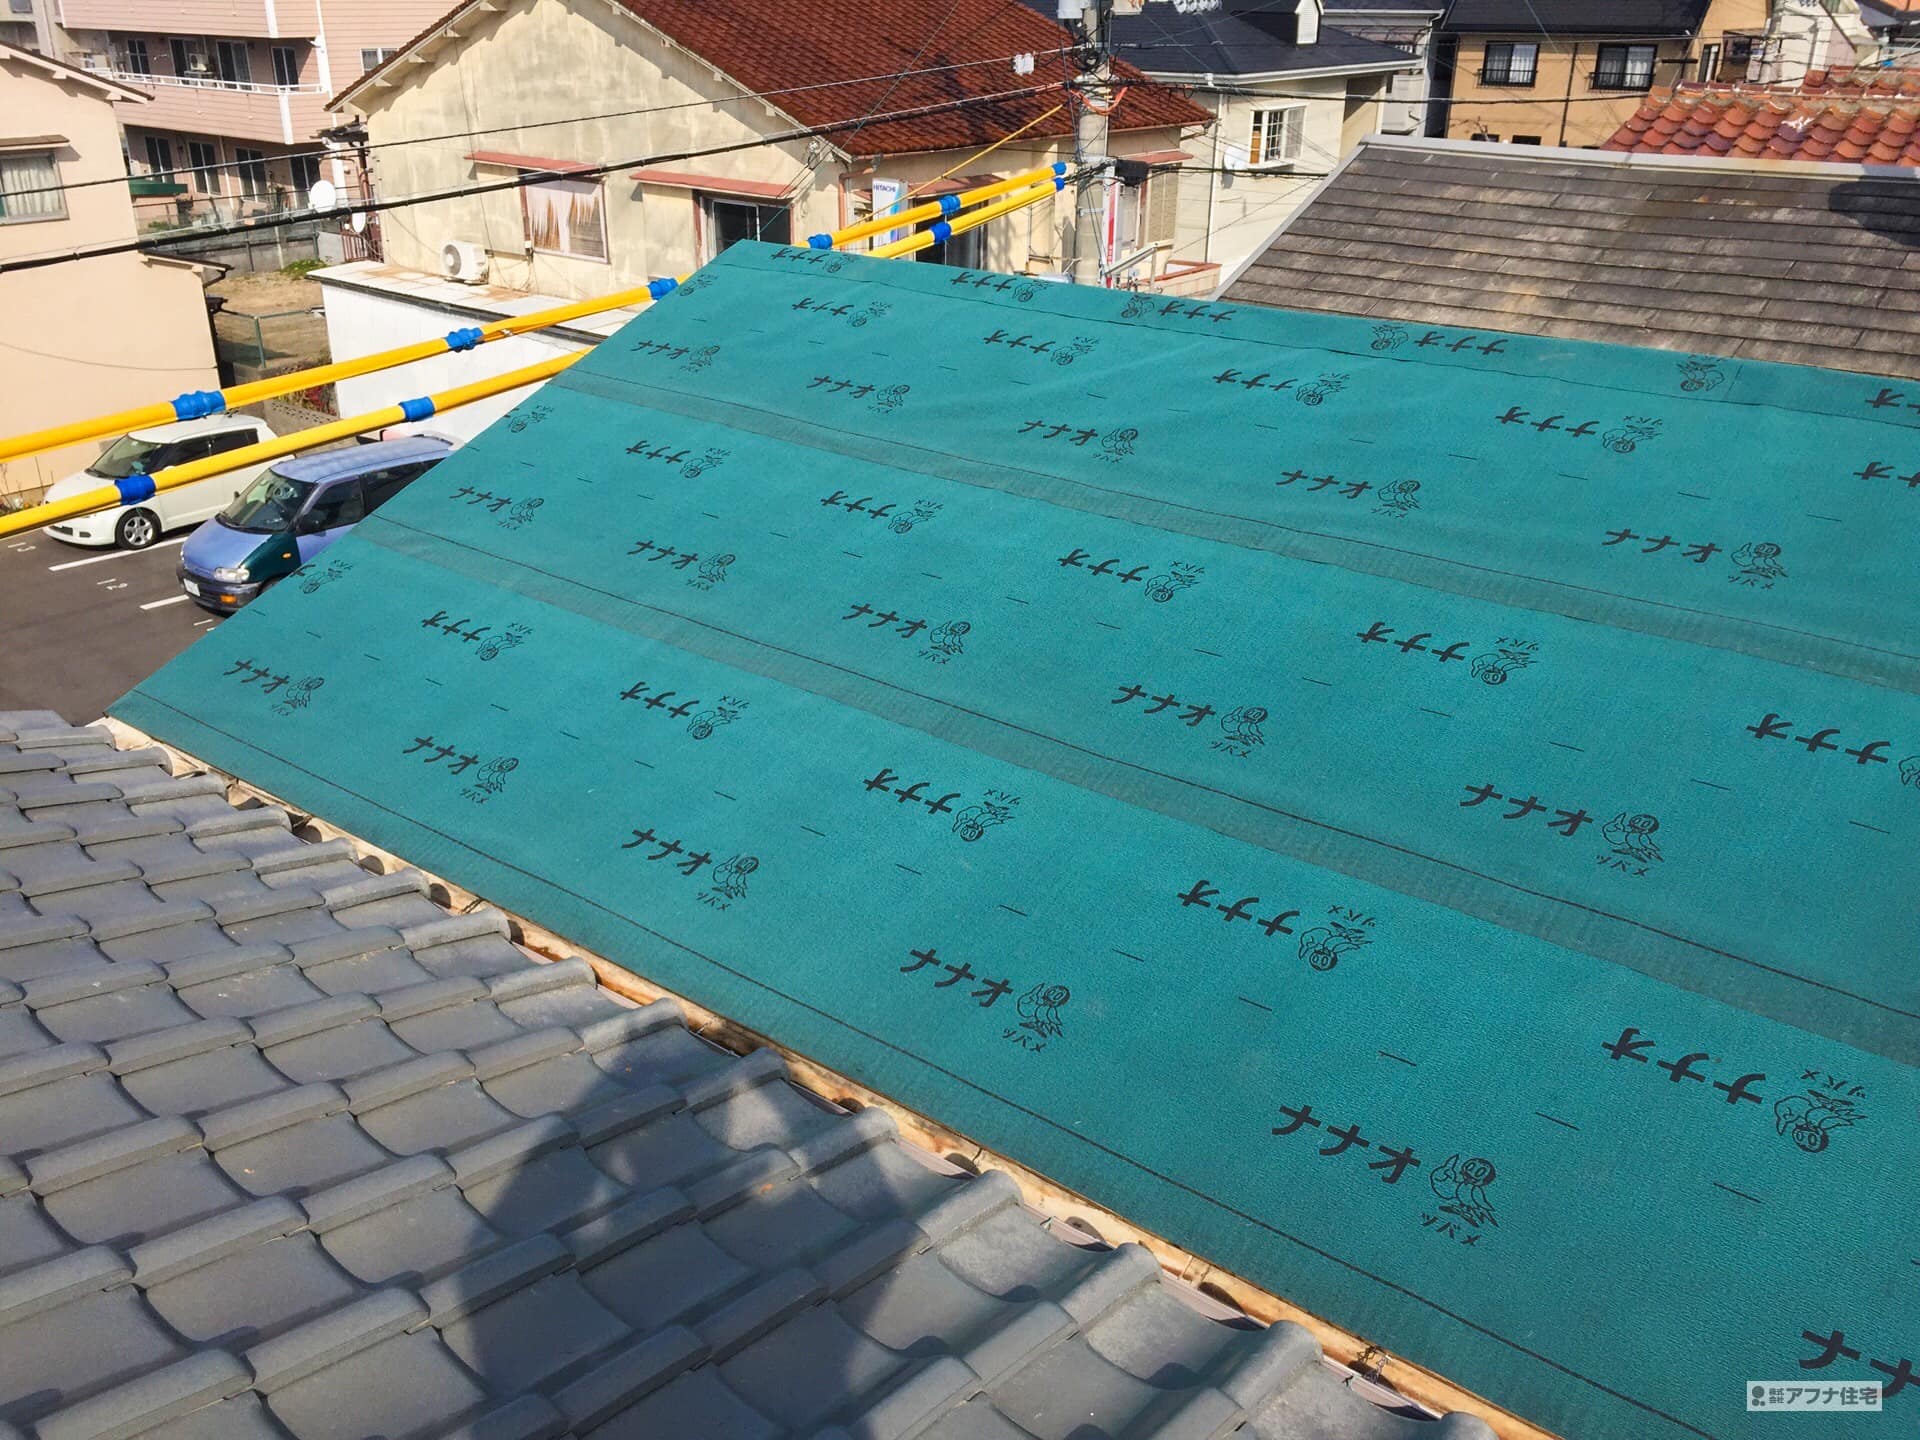 アフナ住宅|屋根葺き替え工事(ガルバリウム鋼板)事例写真